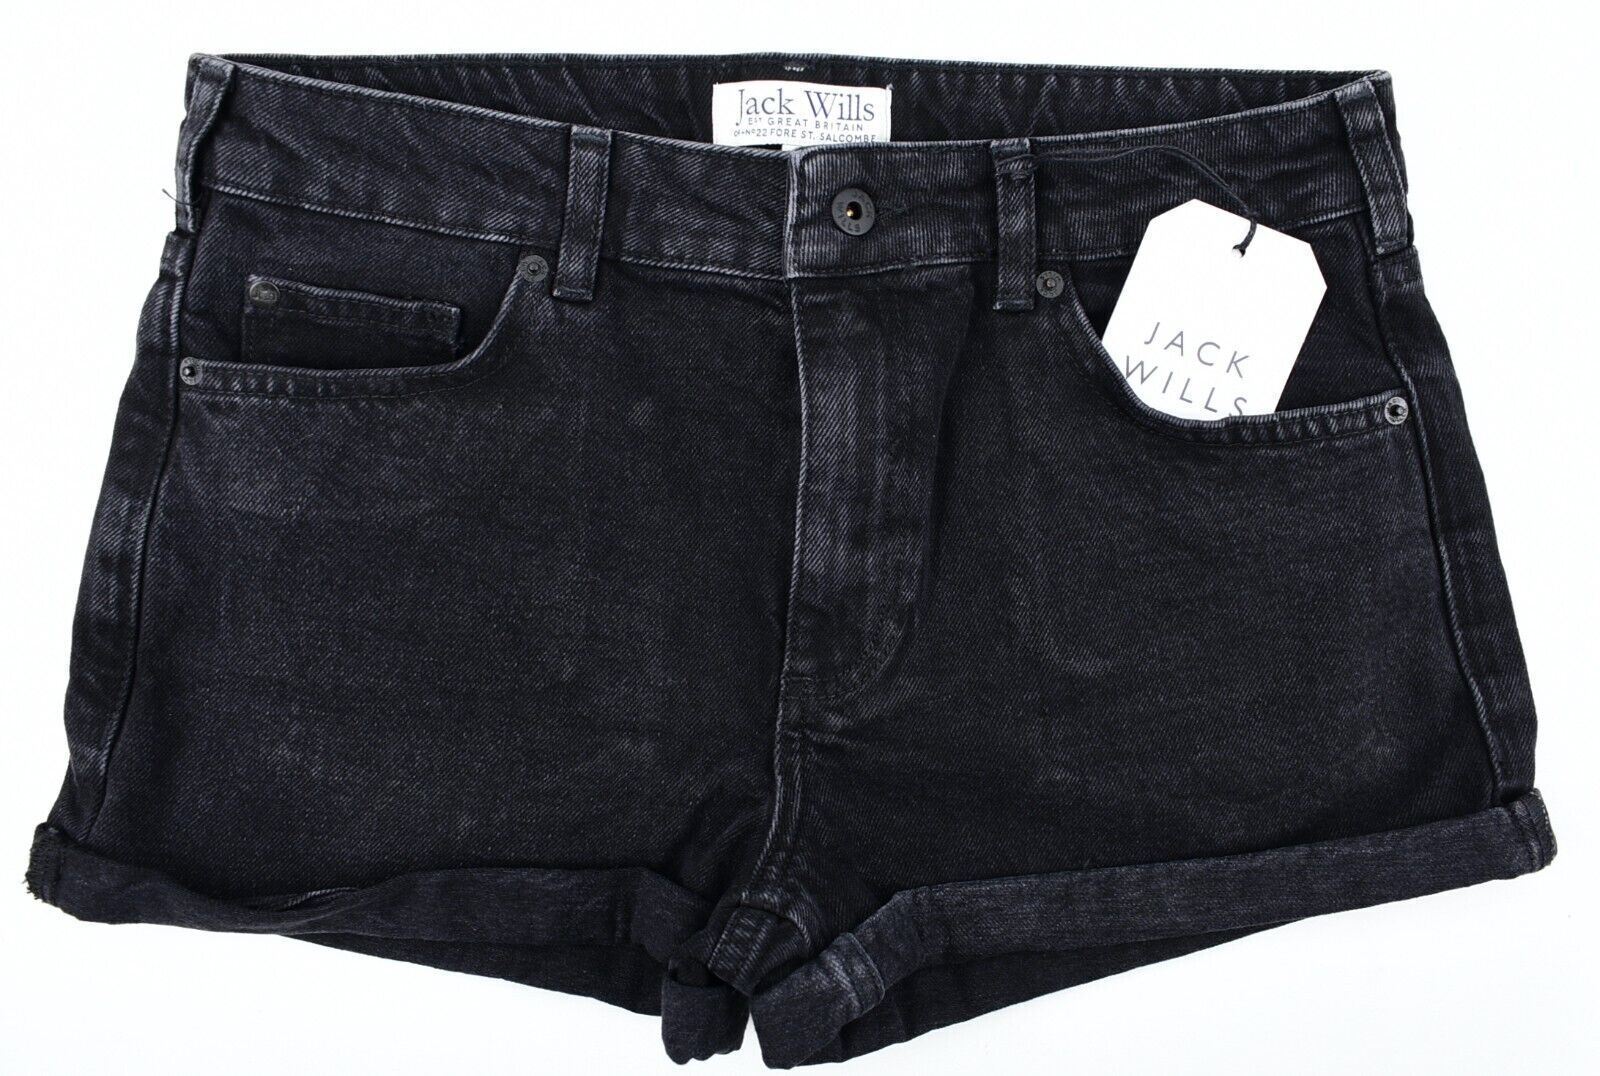 JACK WILLIS Womens LIZZIE Denim Shorts, Washed Black, size M /UK 12